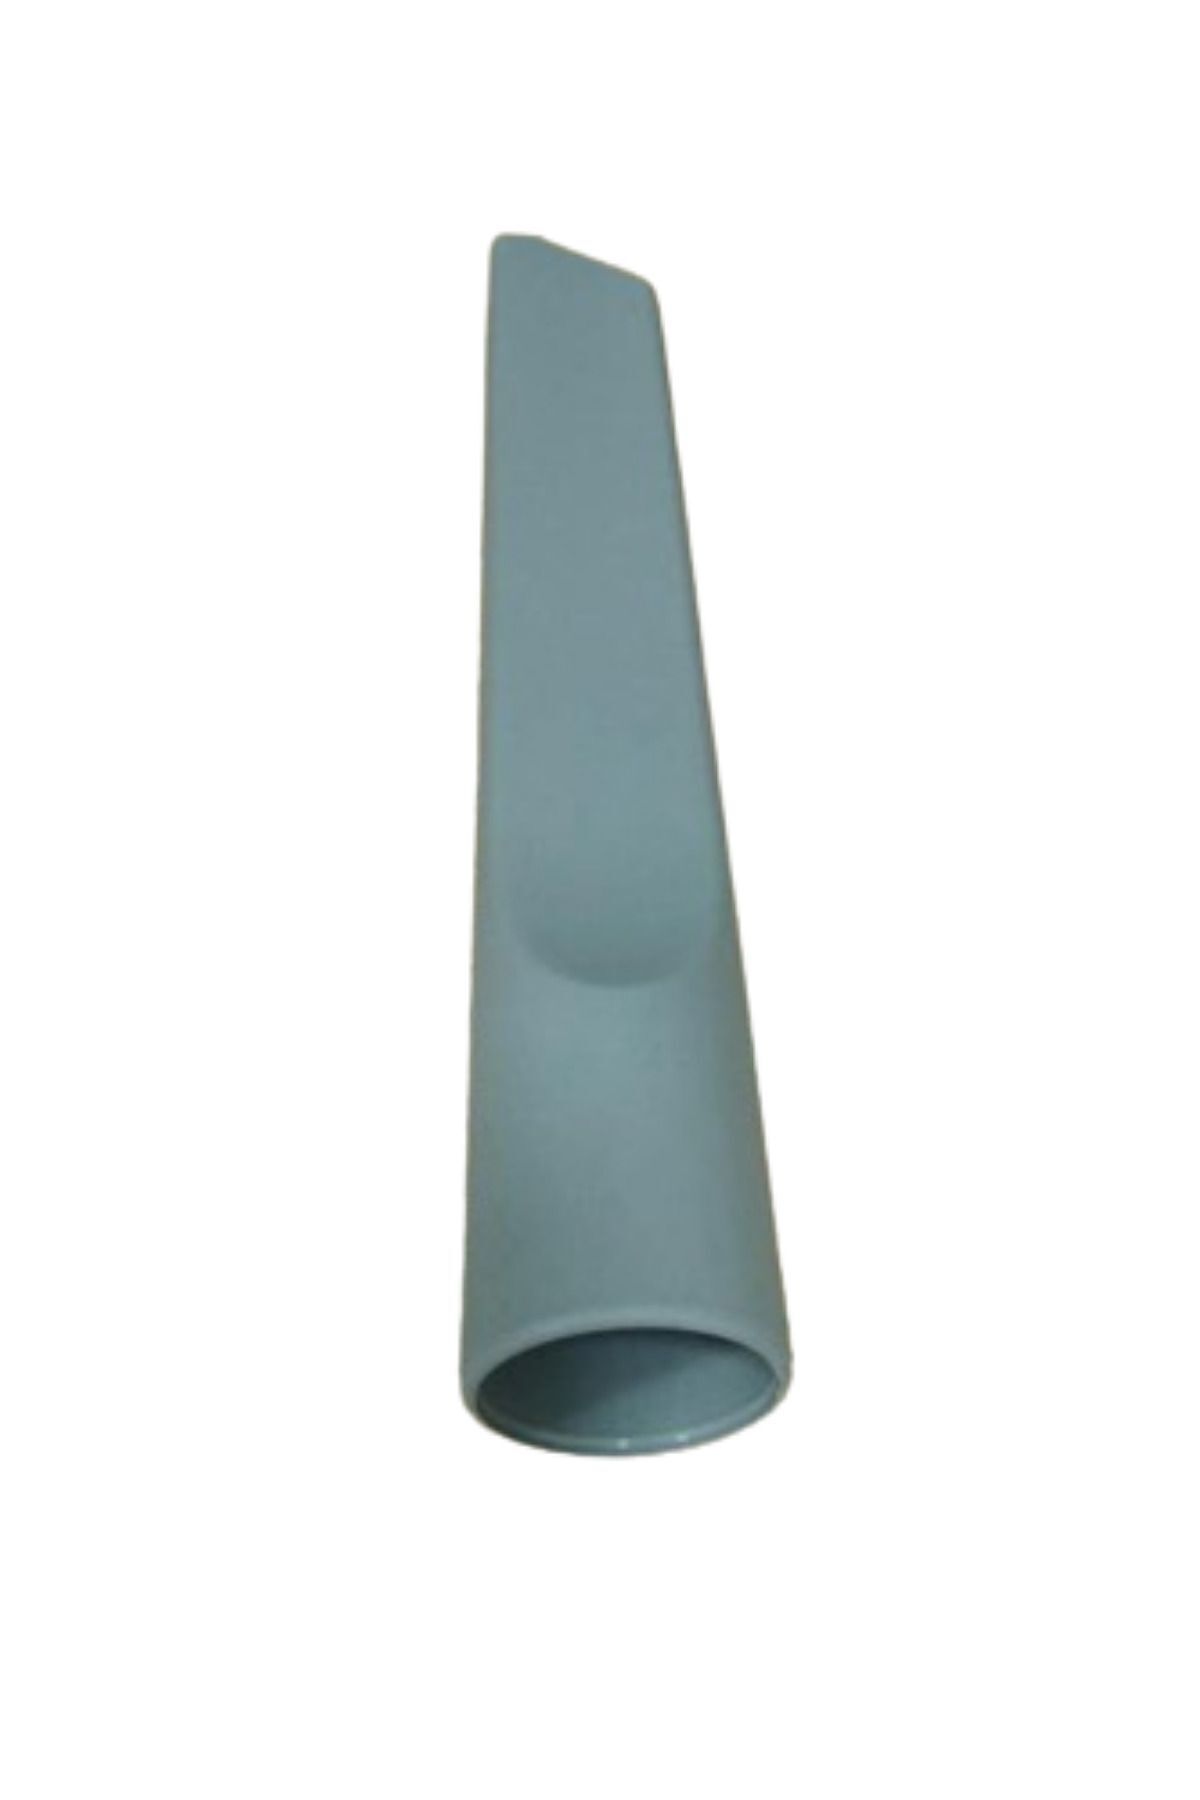 VESTEL Alize A7000 Süpürge Koltuk Arası Düz Emici Başlık Gri Renk(22,5 cm)